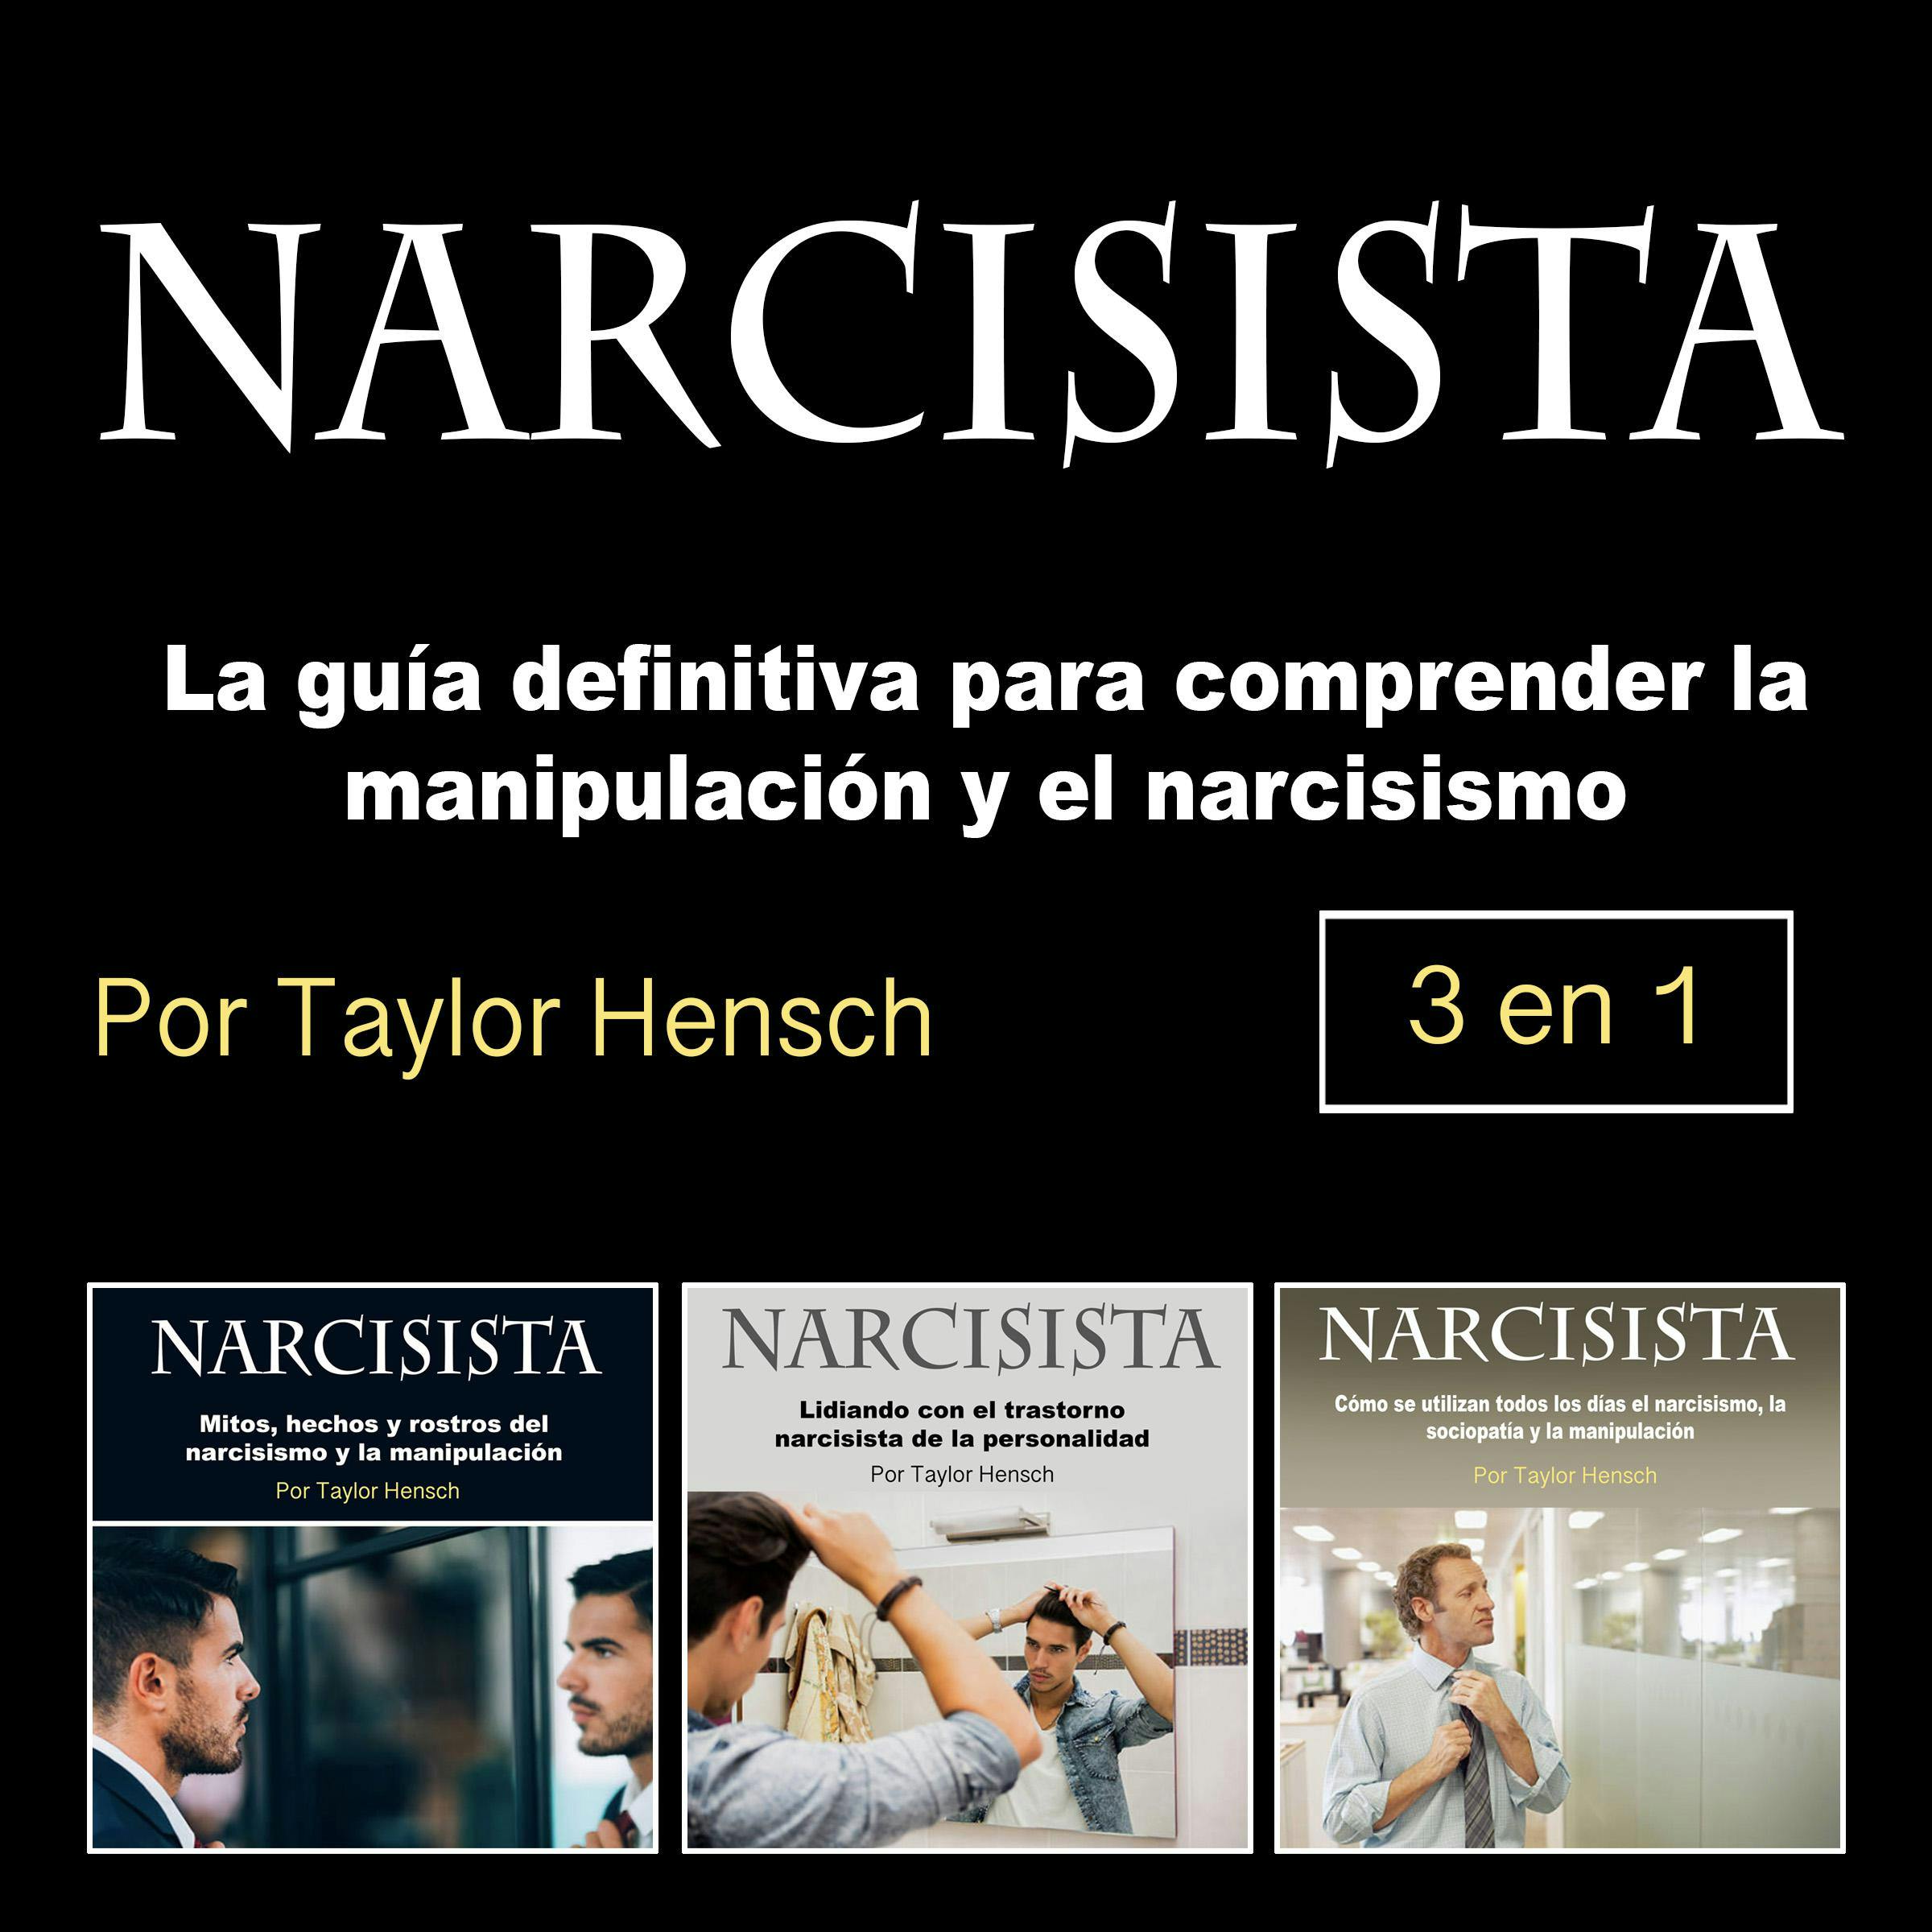 Narcisista: La guía definitiva para comprender la manipulación y el narcisismo - Taylor Hench